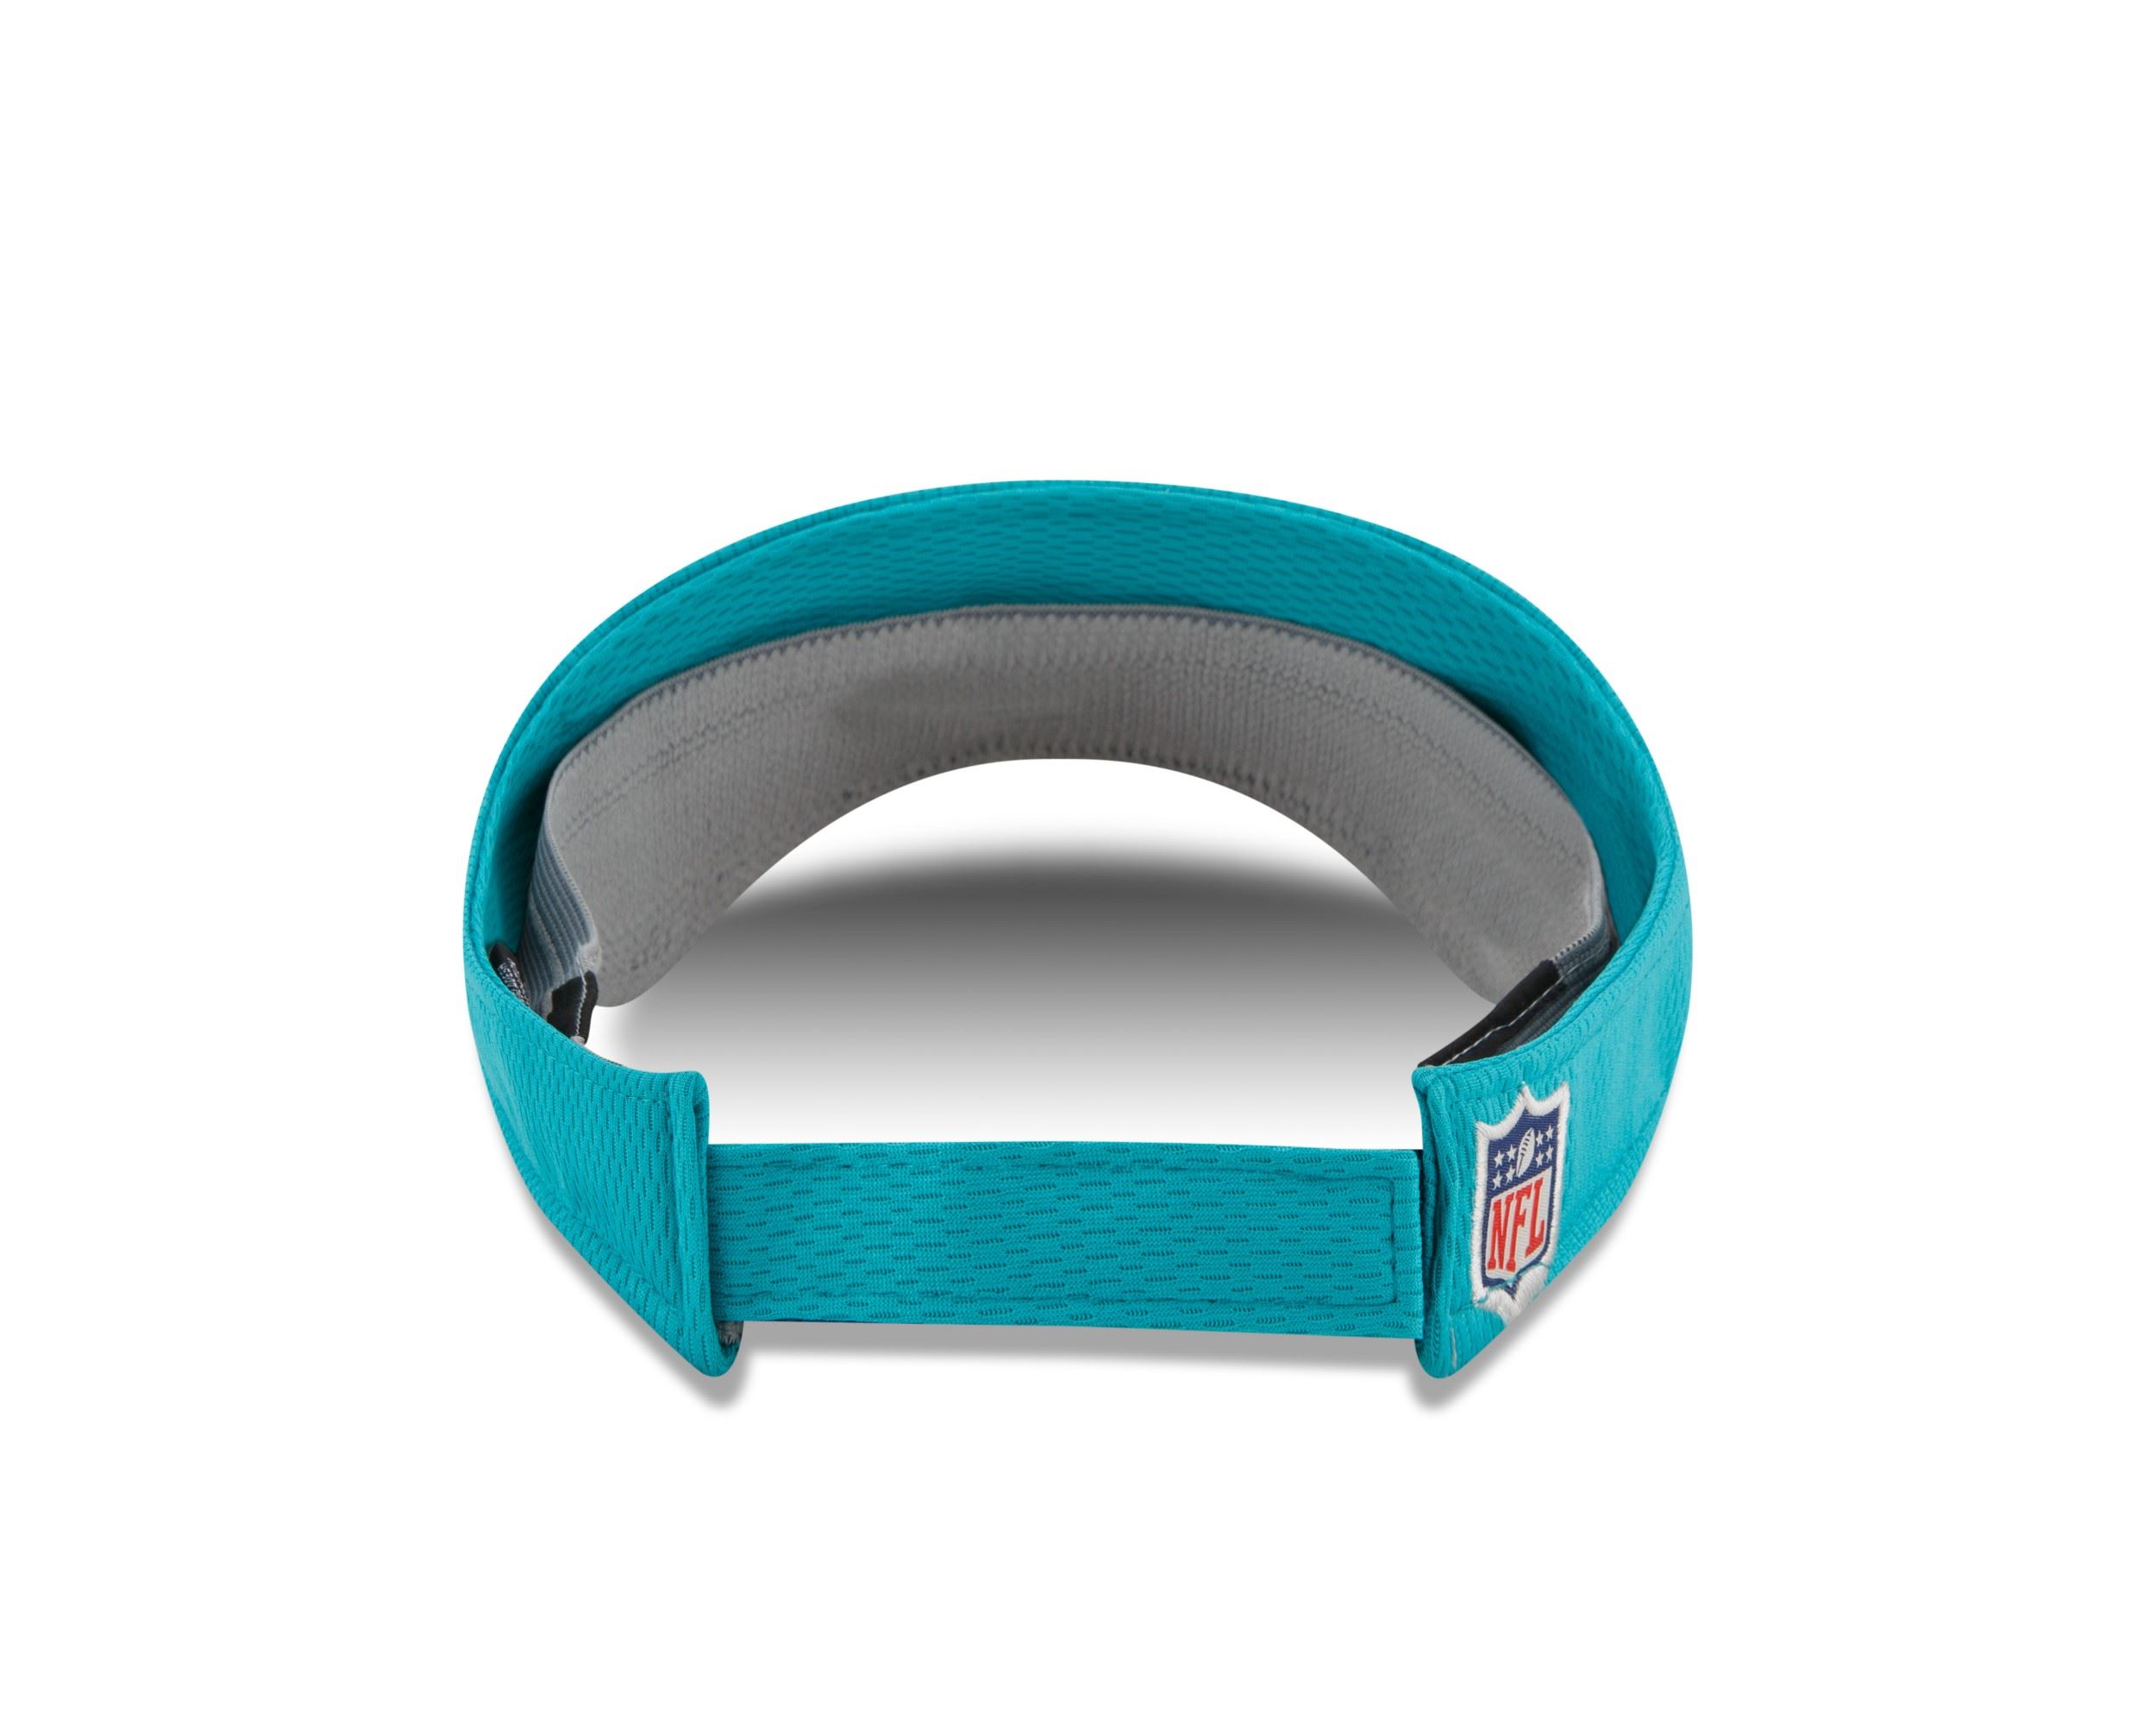 Miami Dolphins NFL 2021 Sideline Turquoise Adjustable Sunvisor New Era